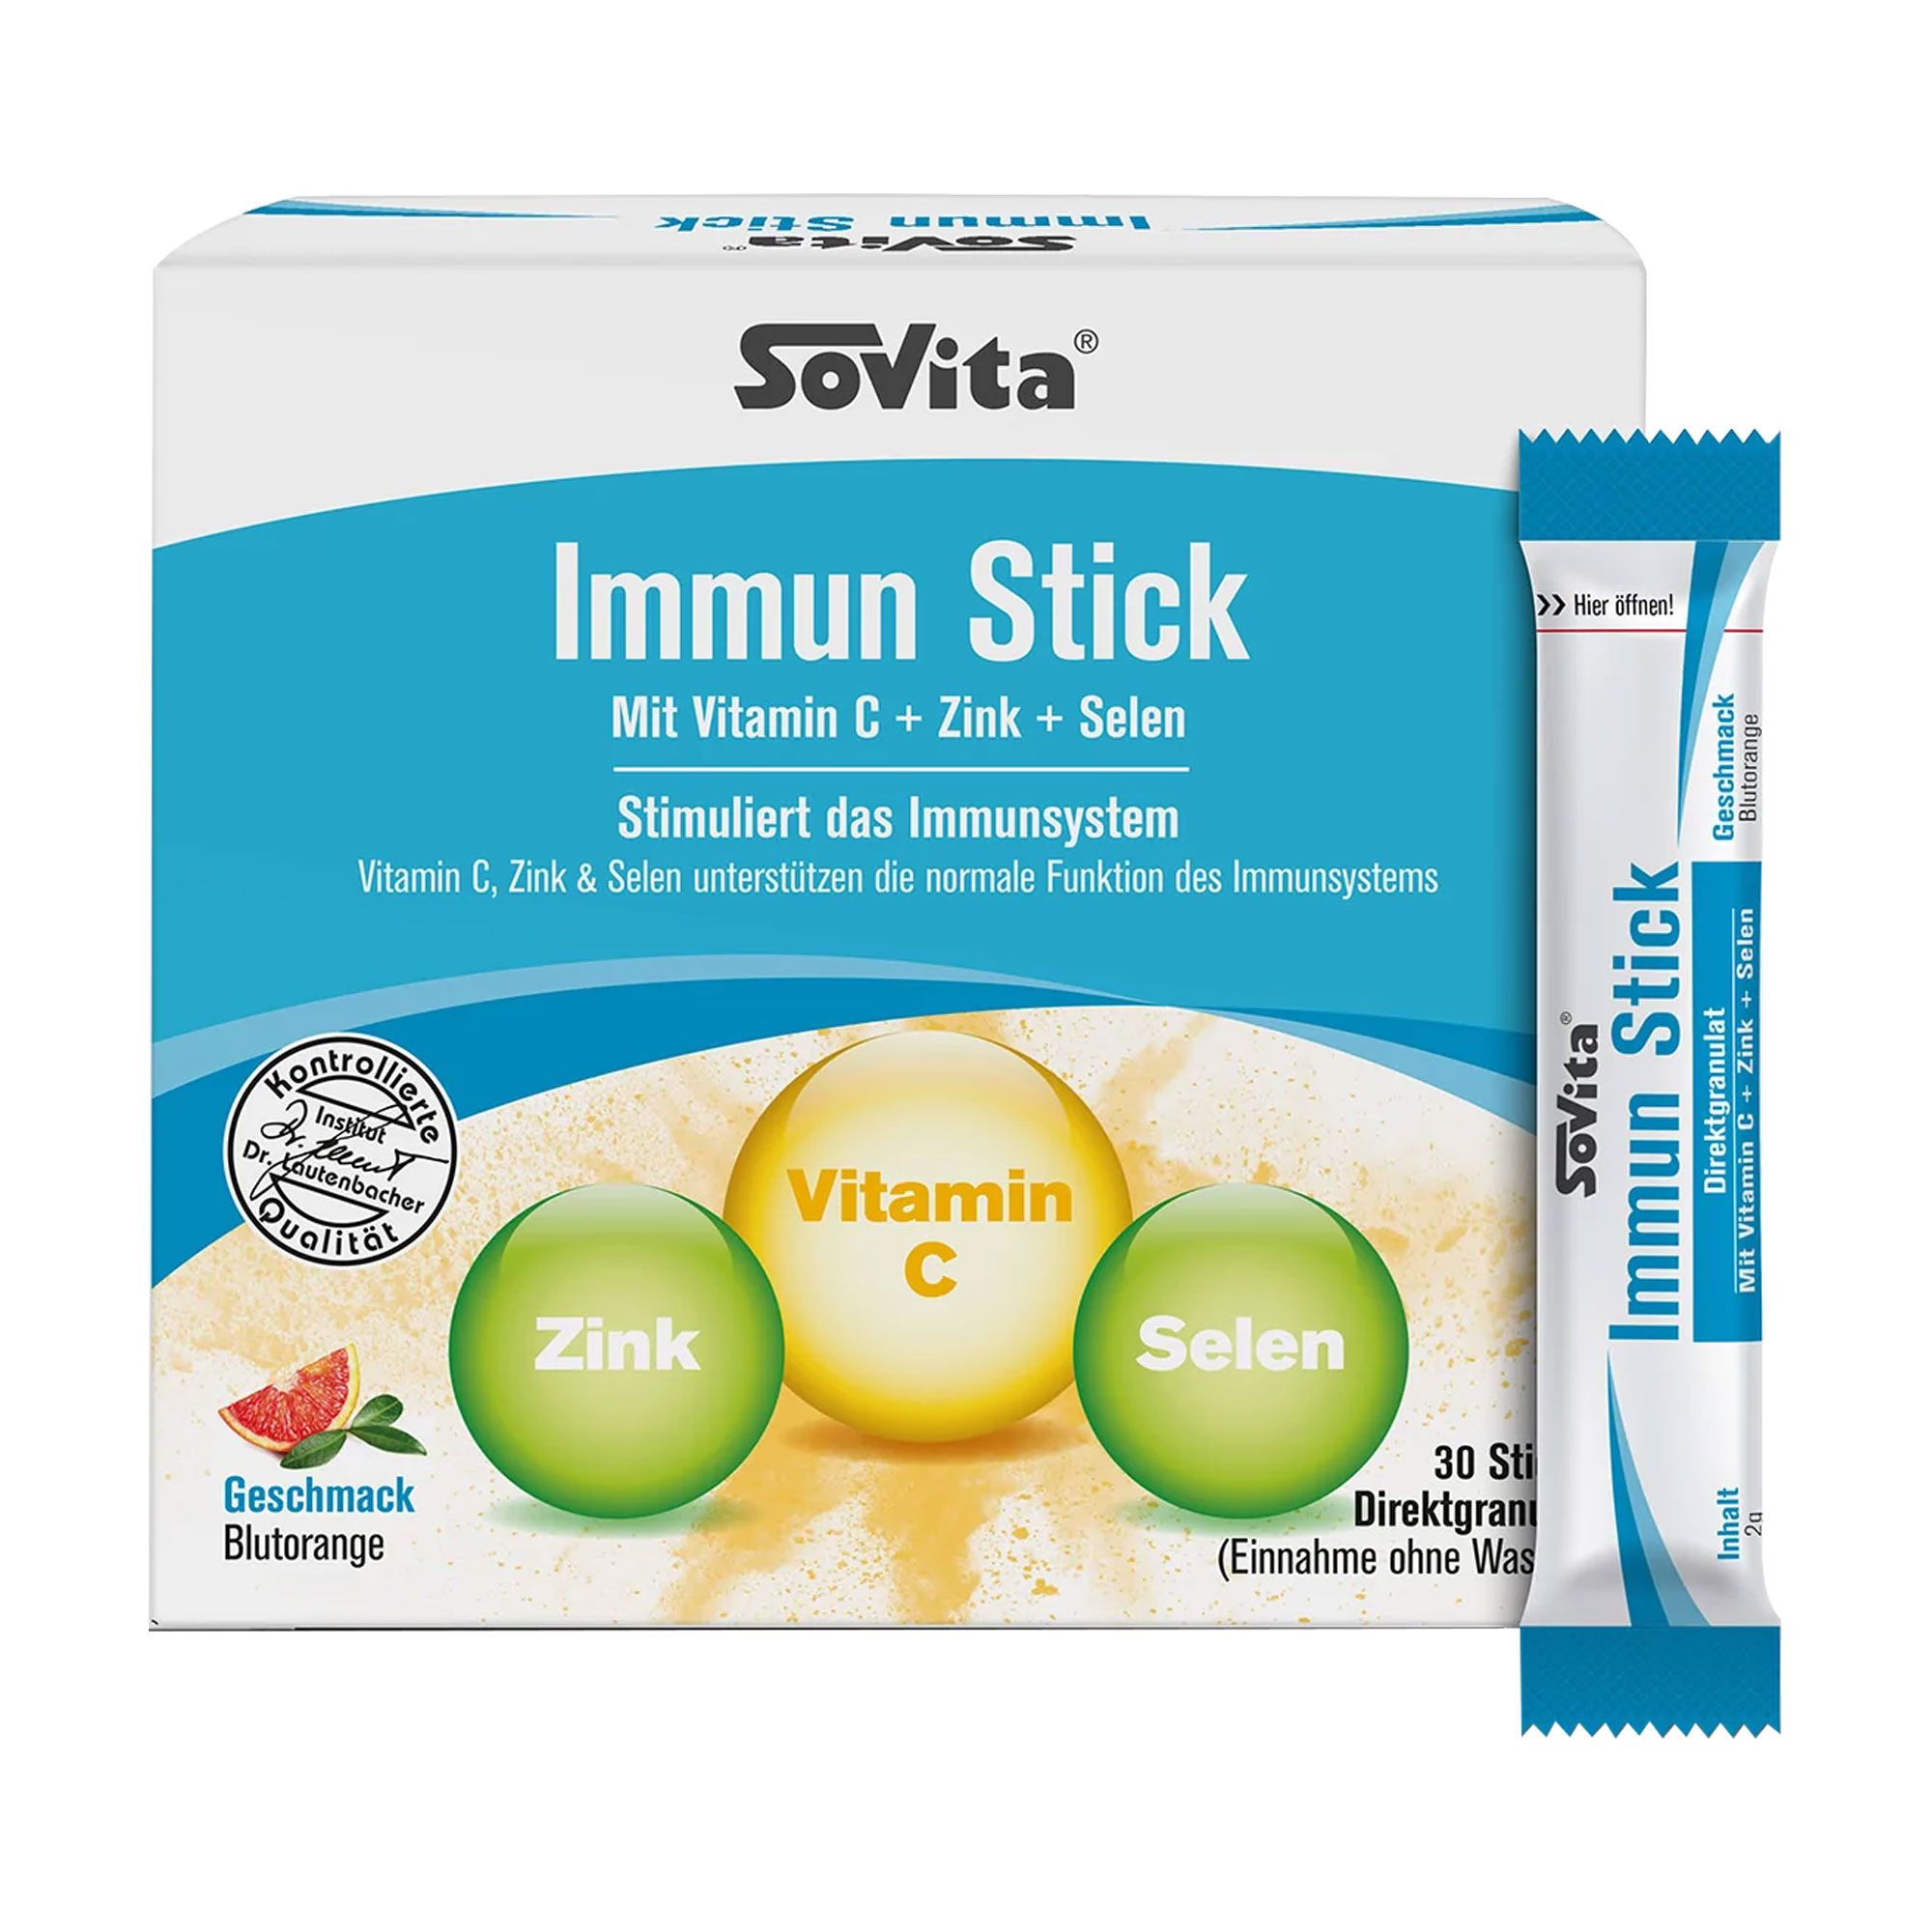 Die Immun Sticks liefern Ihnen eine Kombination aus Vitamin C, Zink und Selen.